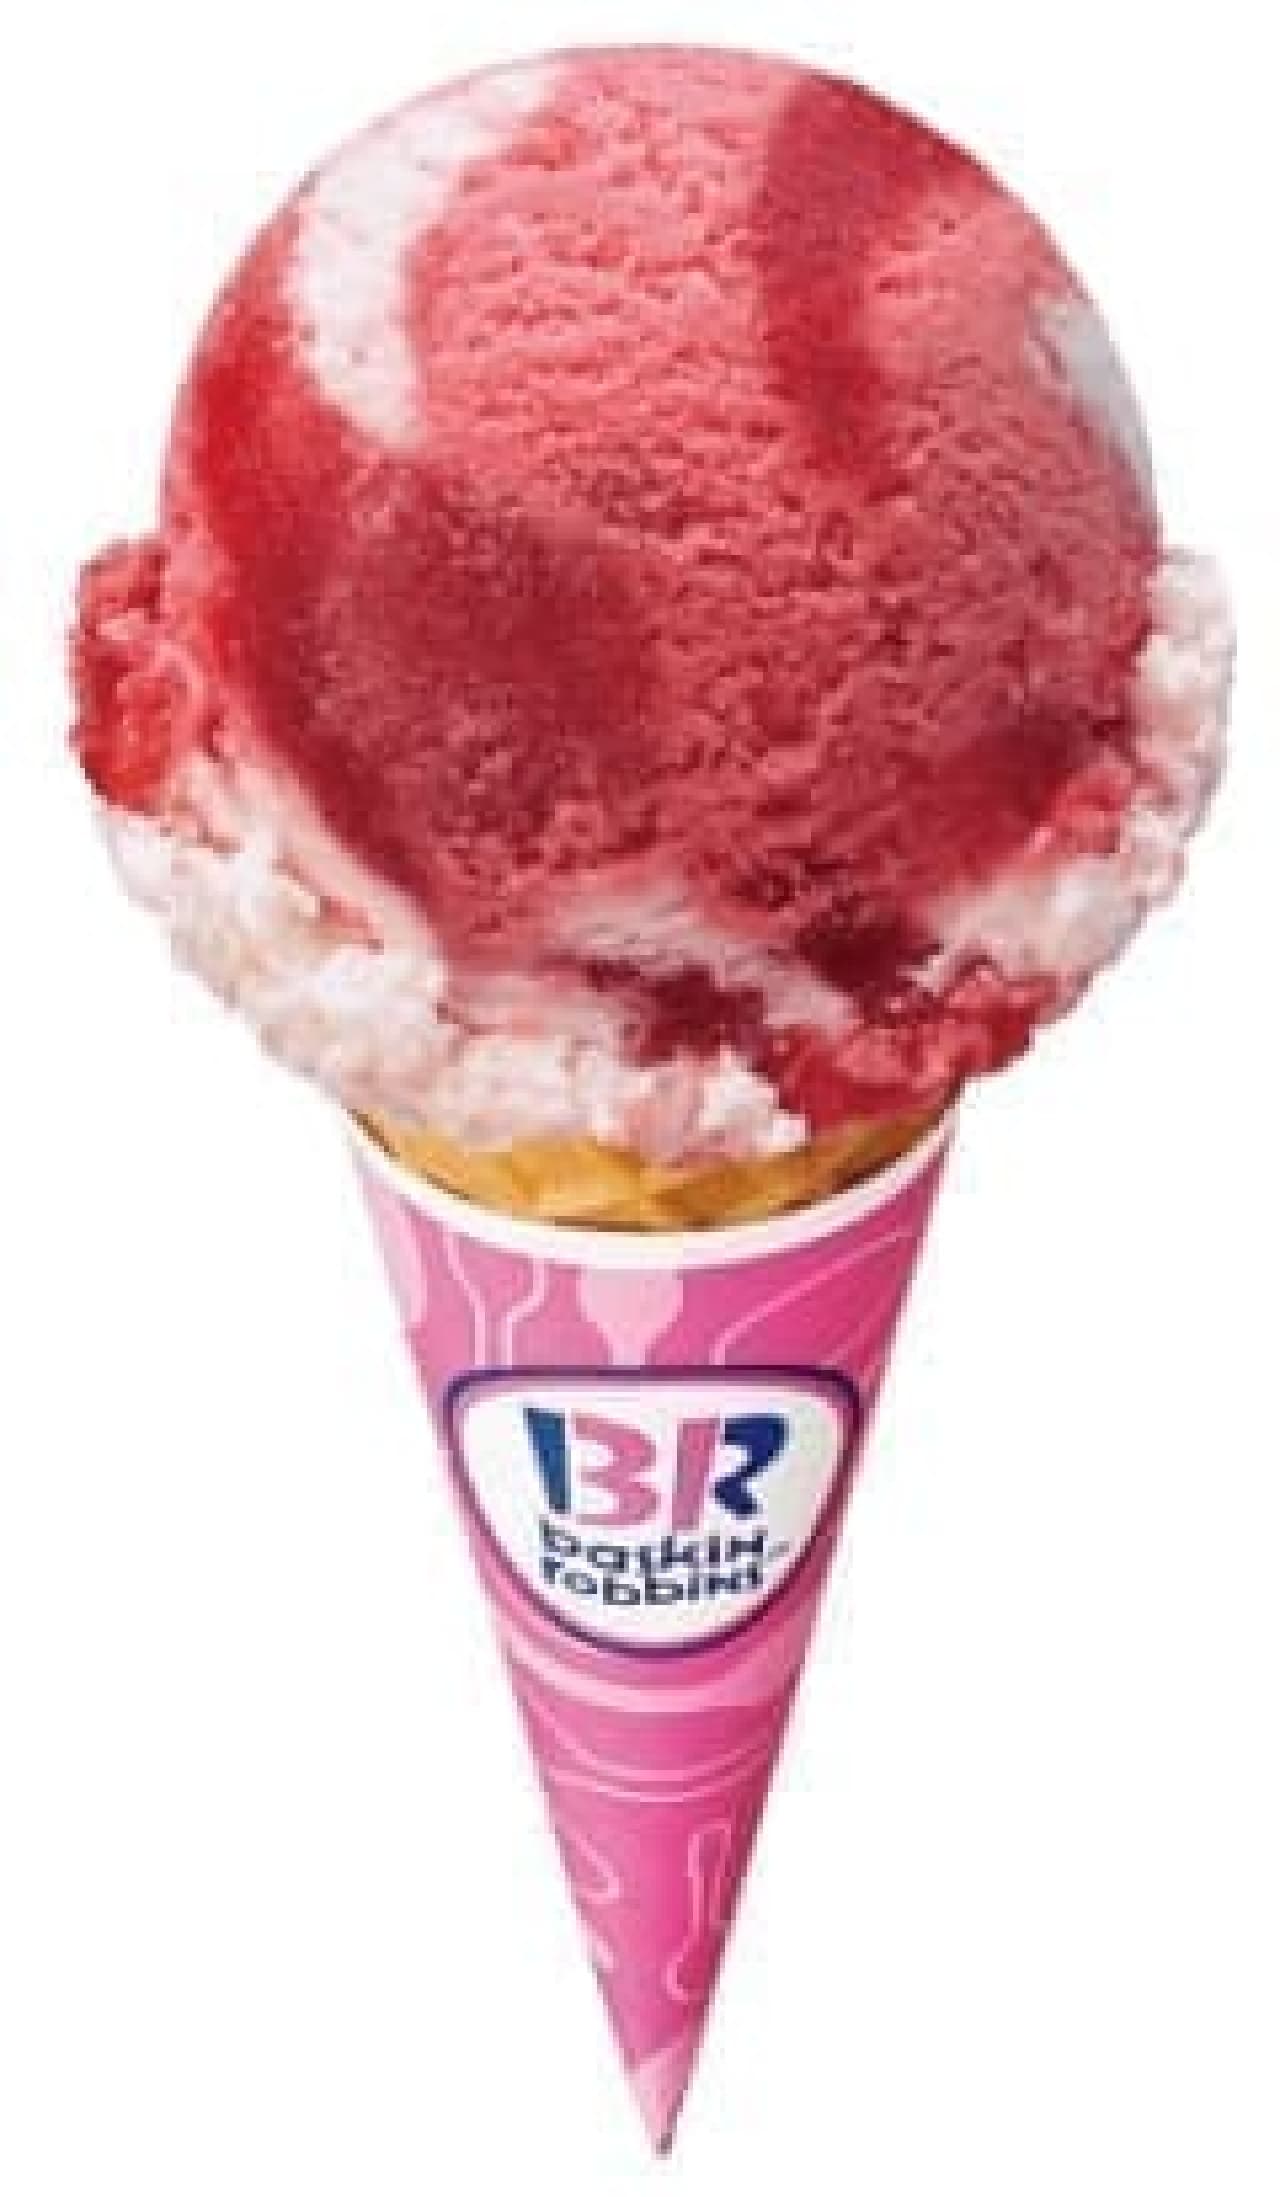 サーティワン アイスクリームの新フレーバー「ストロベリースペシャルタイム」